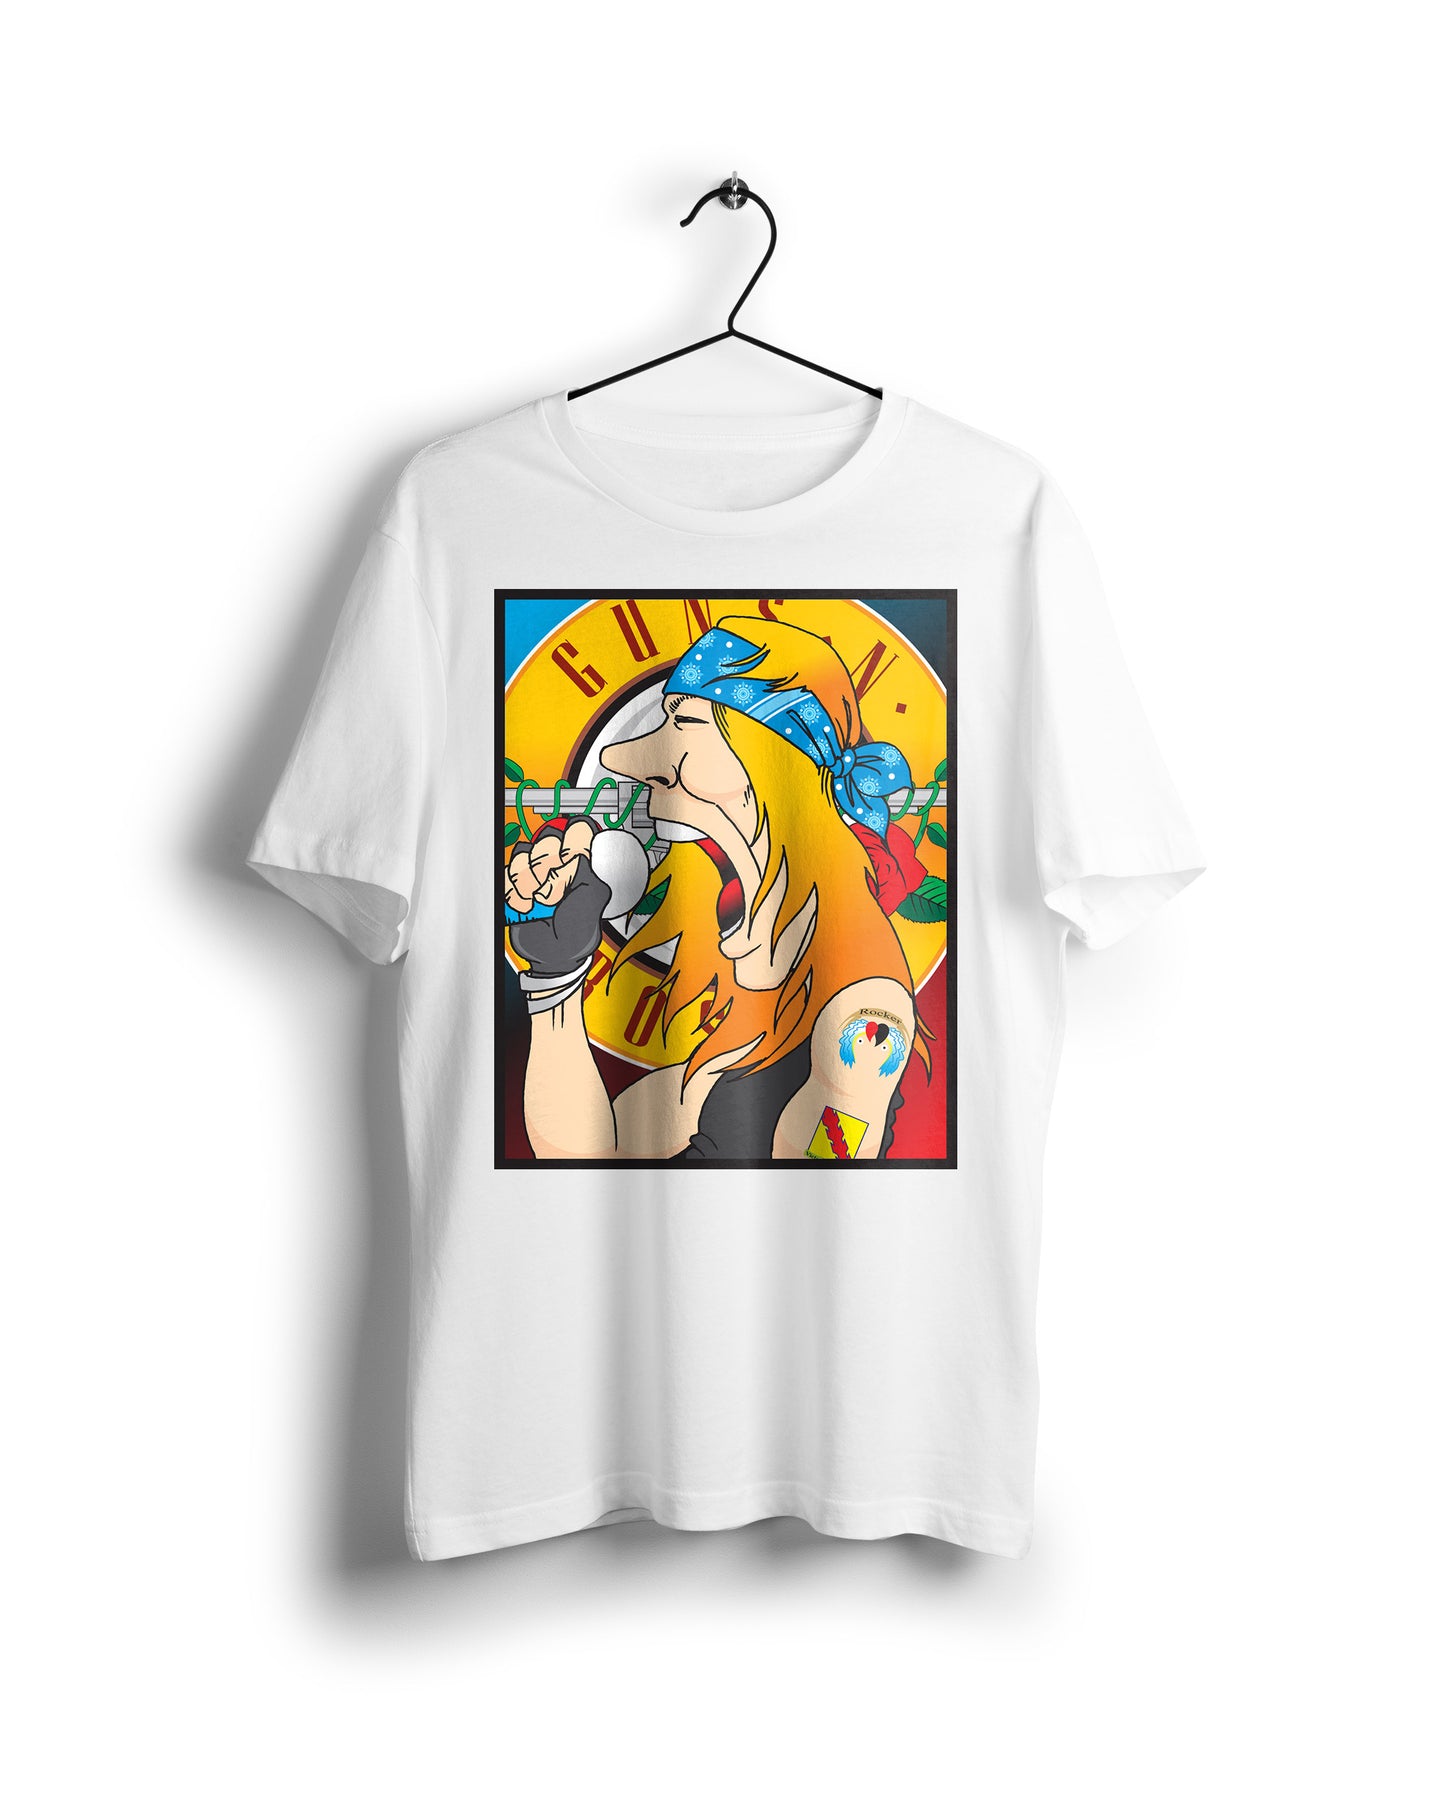 Guns N Roses 1992 - Digital Graphics Basic T-shirt White